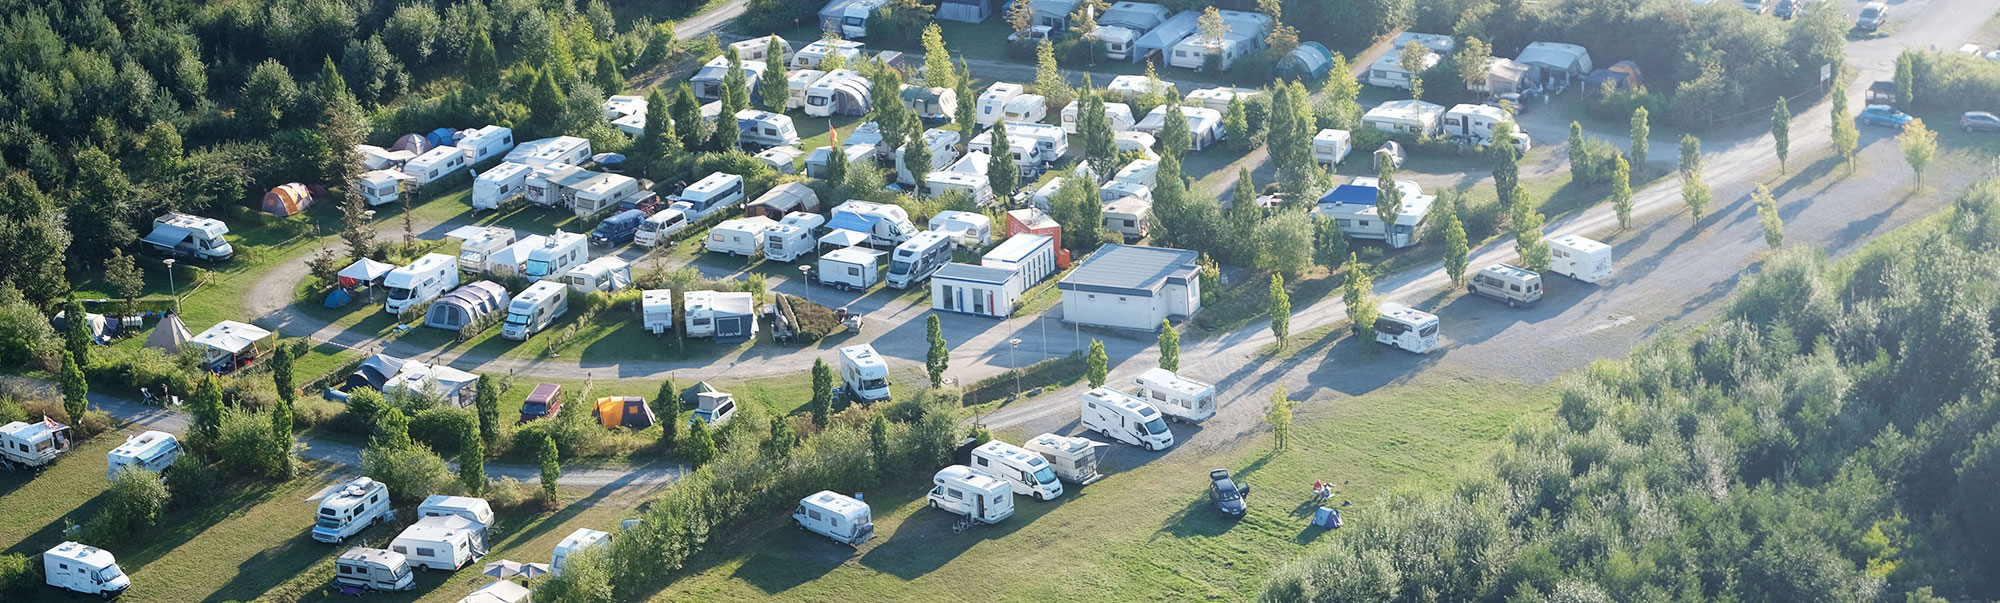 Campingplatz Gästehaus Warsteiner Welt